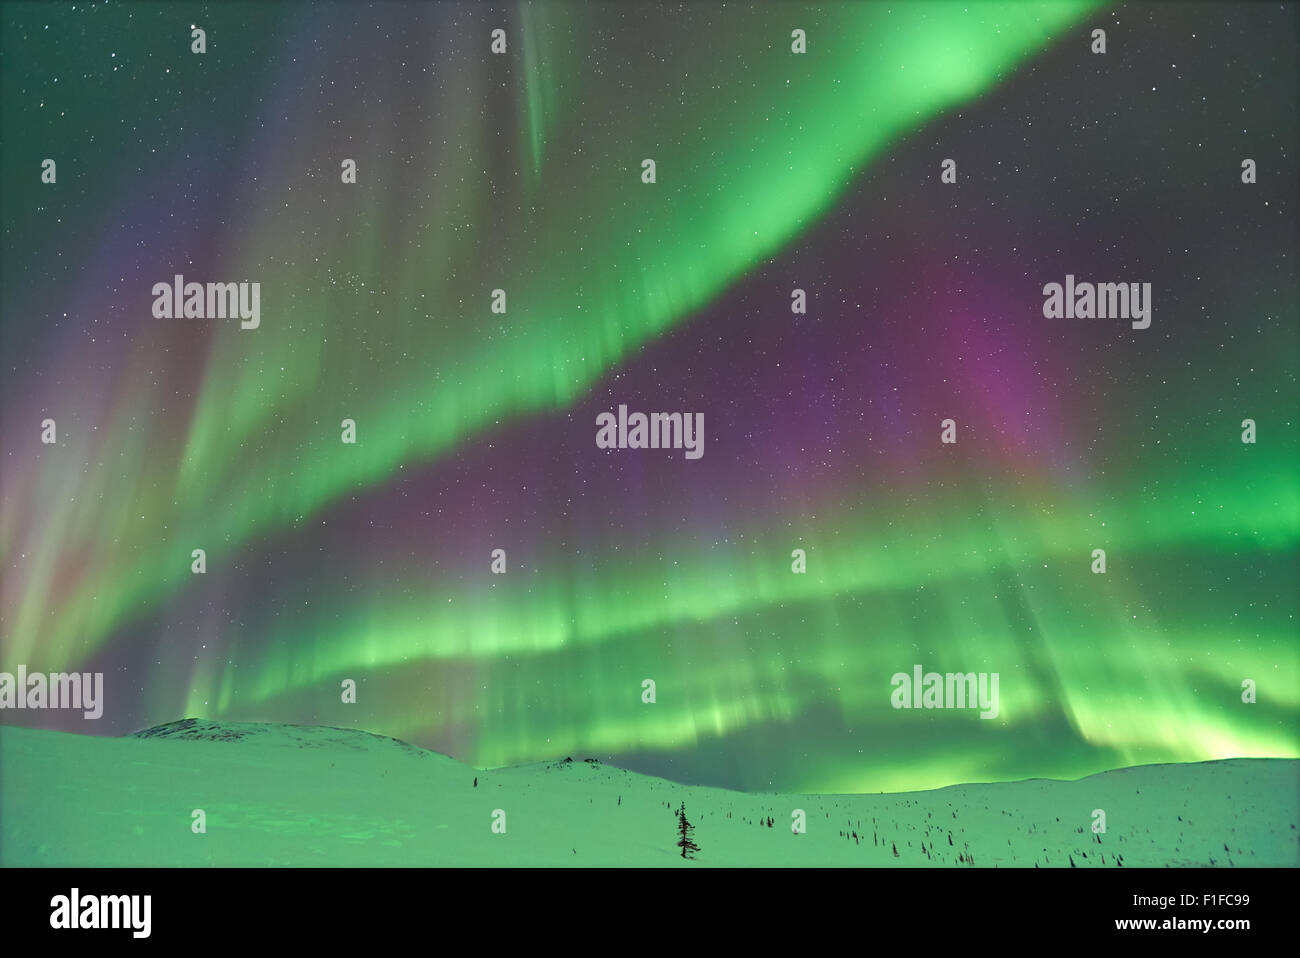 Aurora Borealis / Northern Lights in Alaska Stock Photo